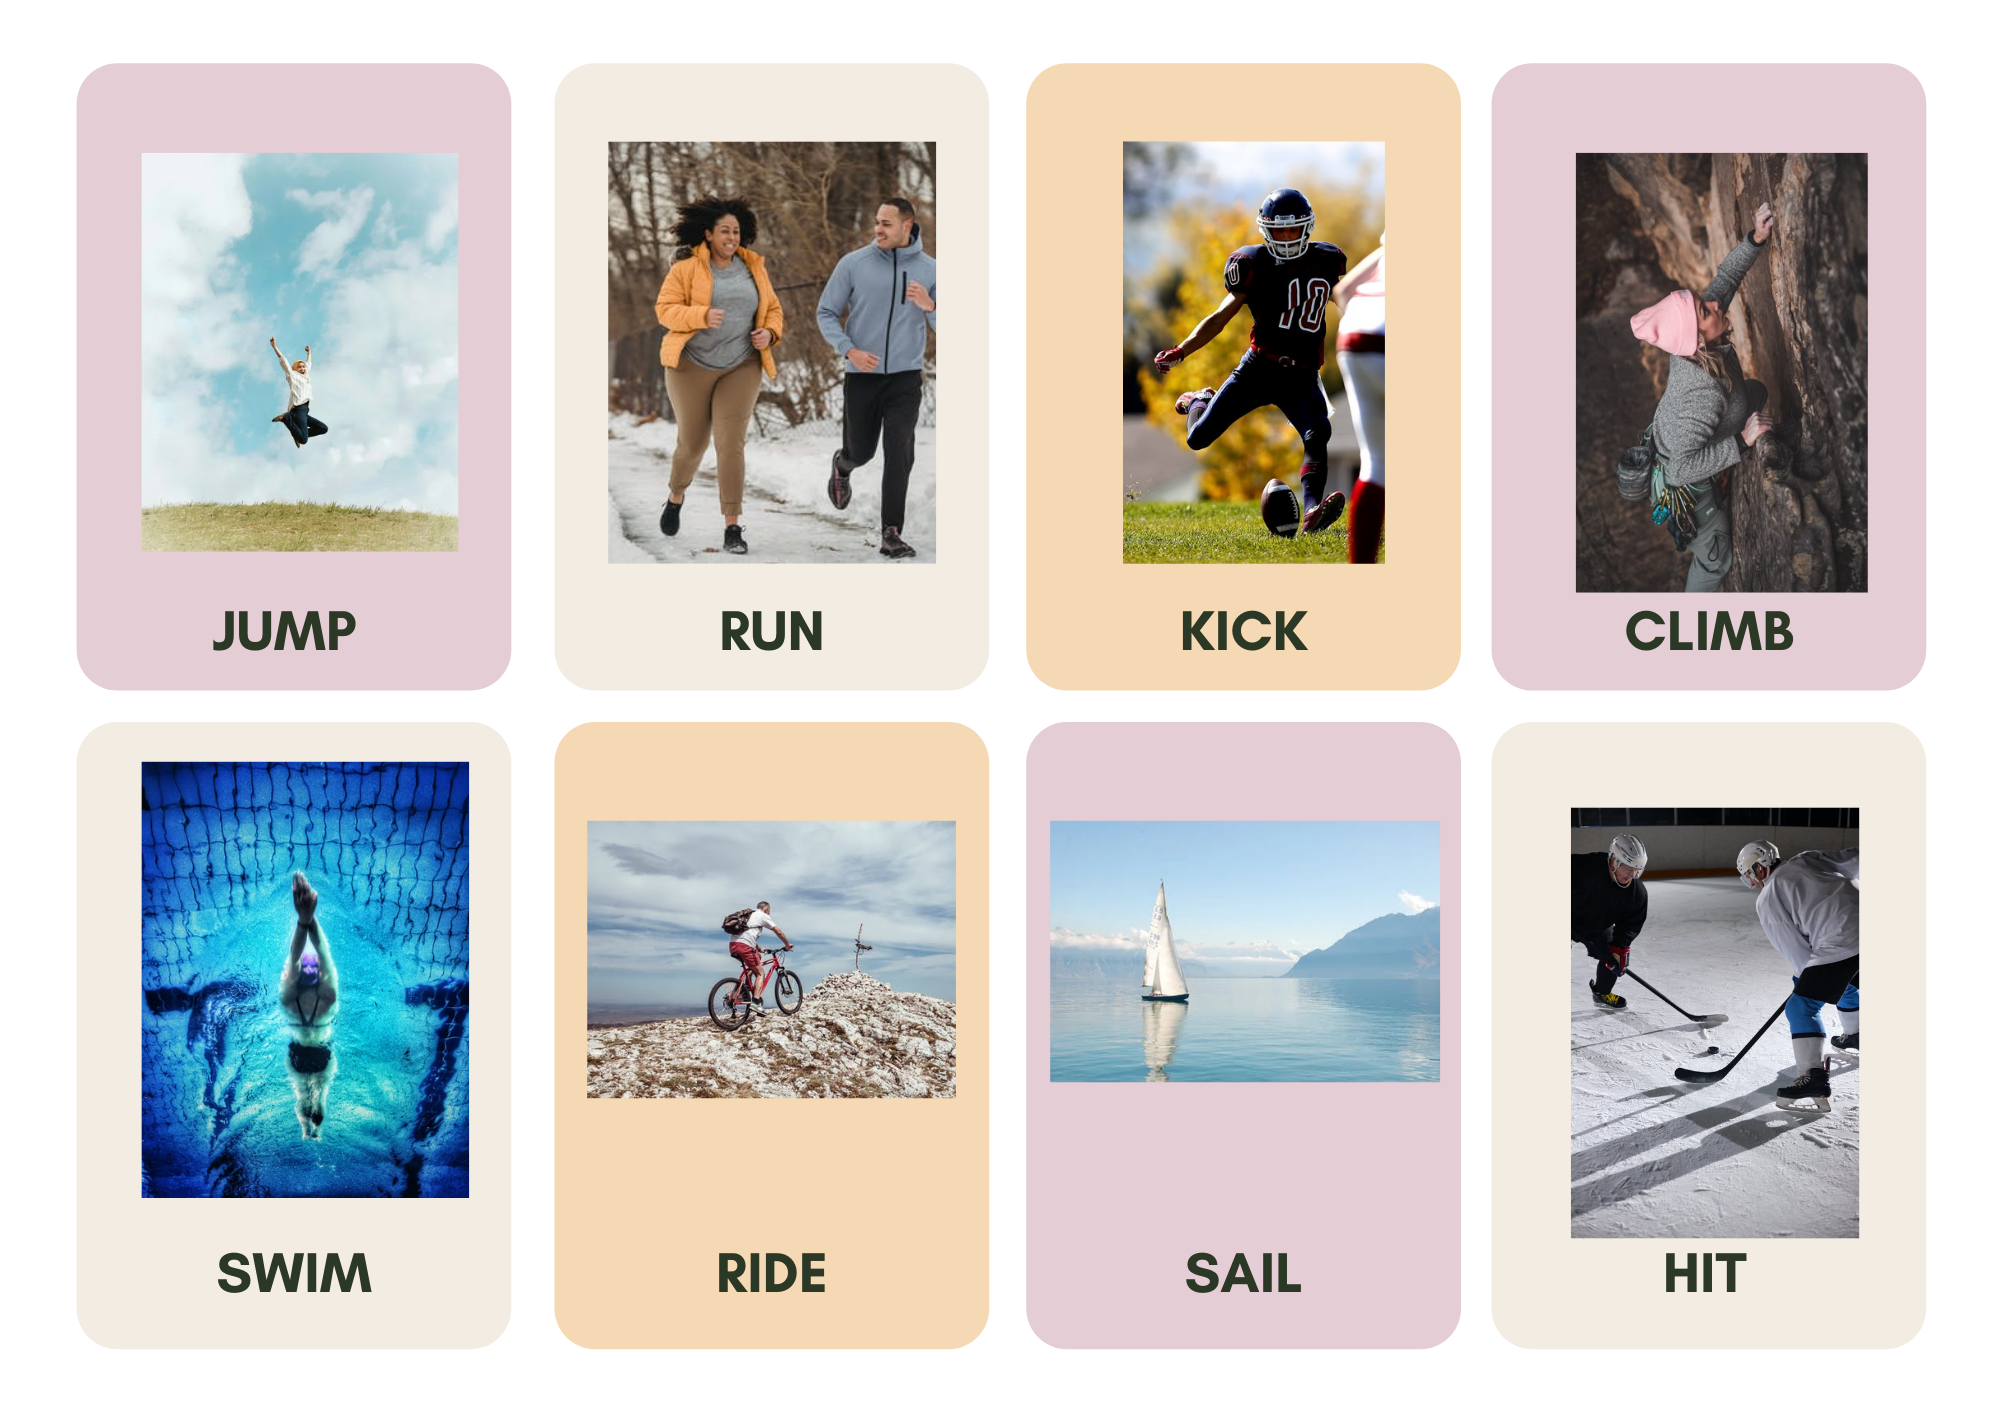 La imagen contiene los verbos de acción: saltar, correr, dar patadas, escalar, nadar, montar en bici, navegar y golpear la pelota y se acompaña de la imagen de cada acción.